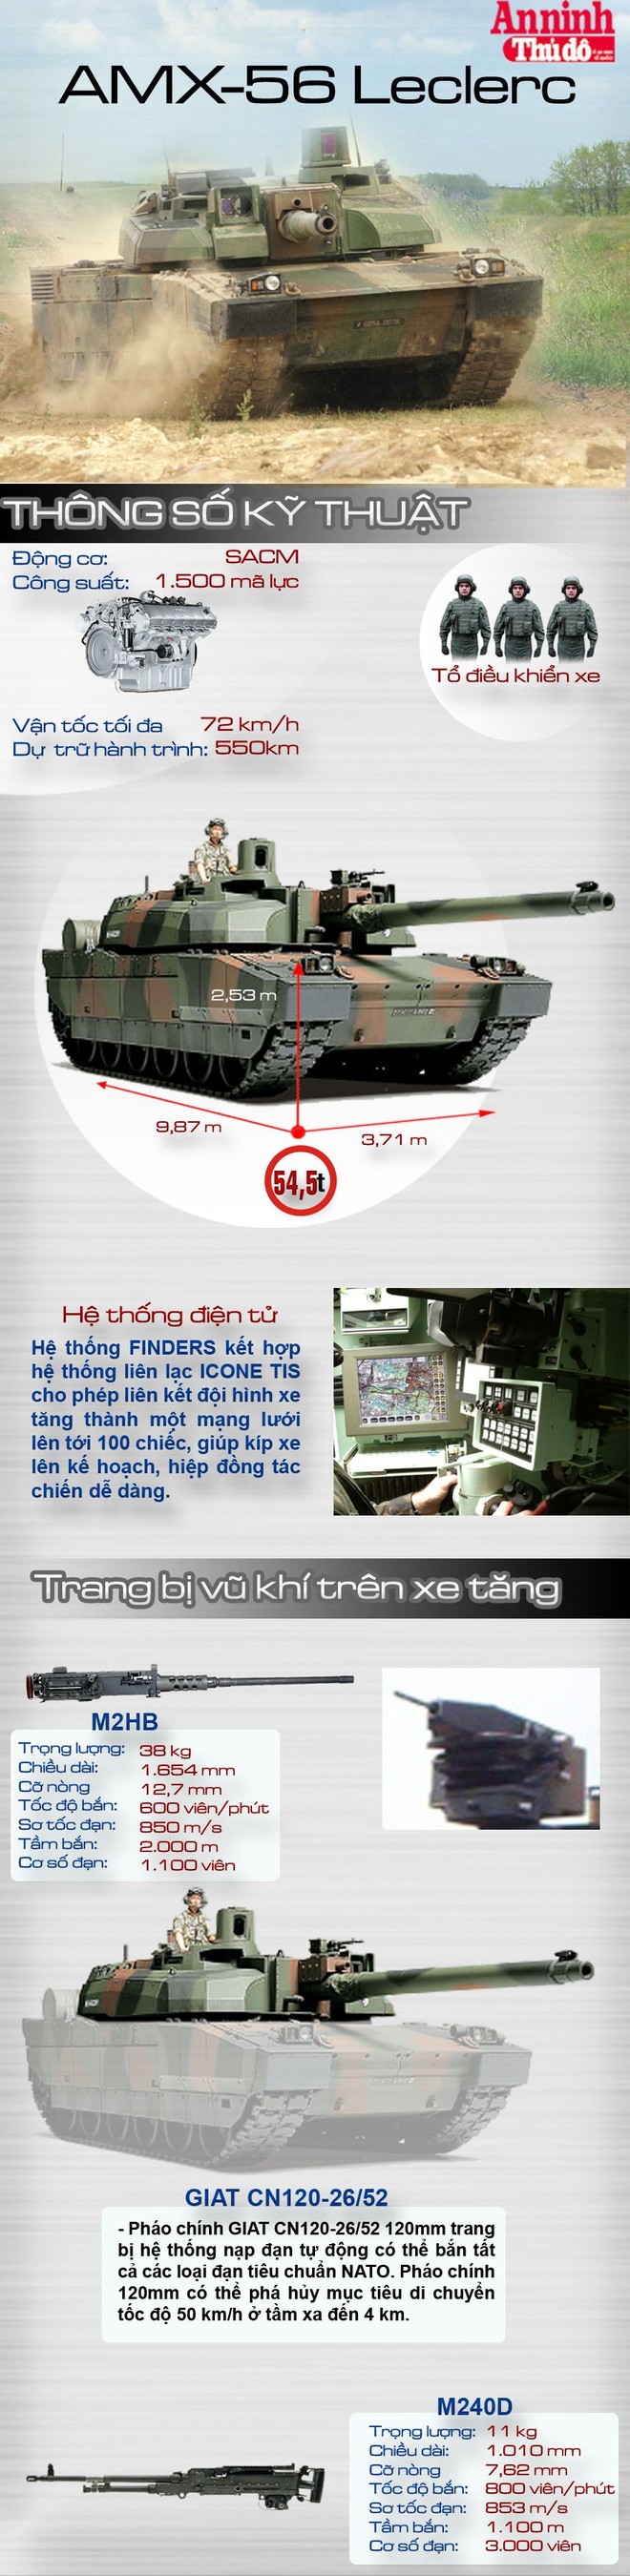 [Infographic] AMX-56 Leclerc - Siêu tăng đắt nhất thế giới của Pháp